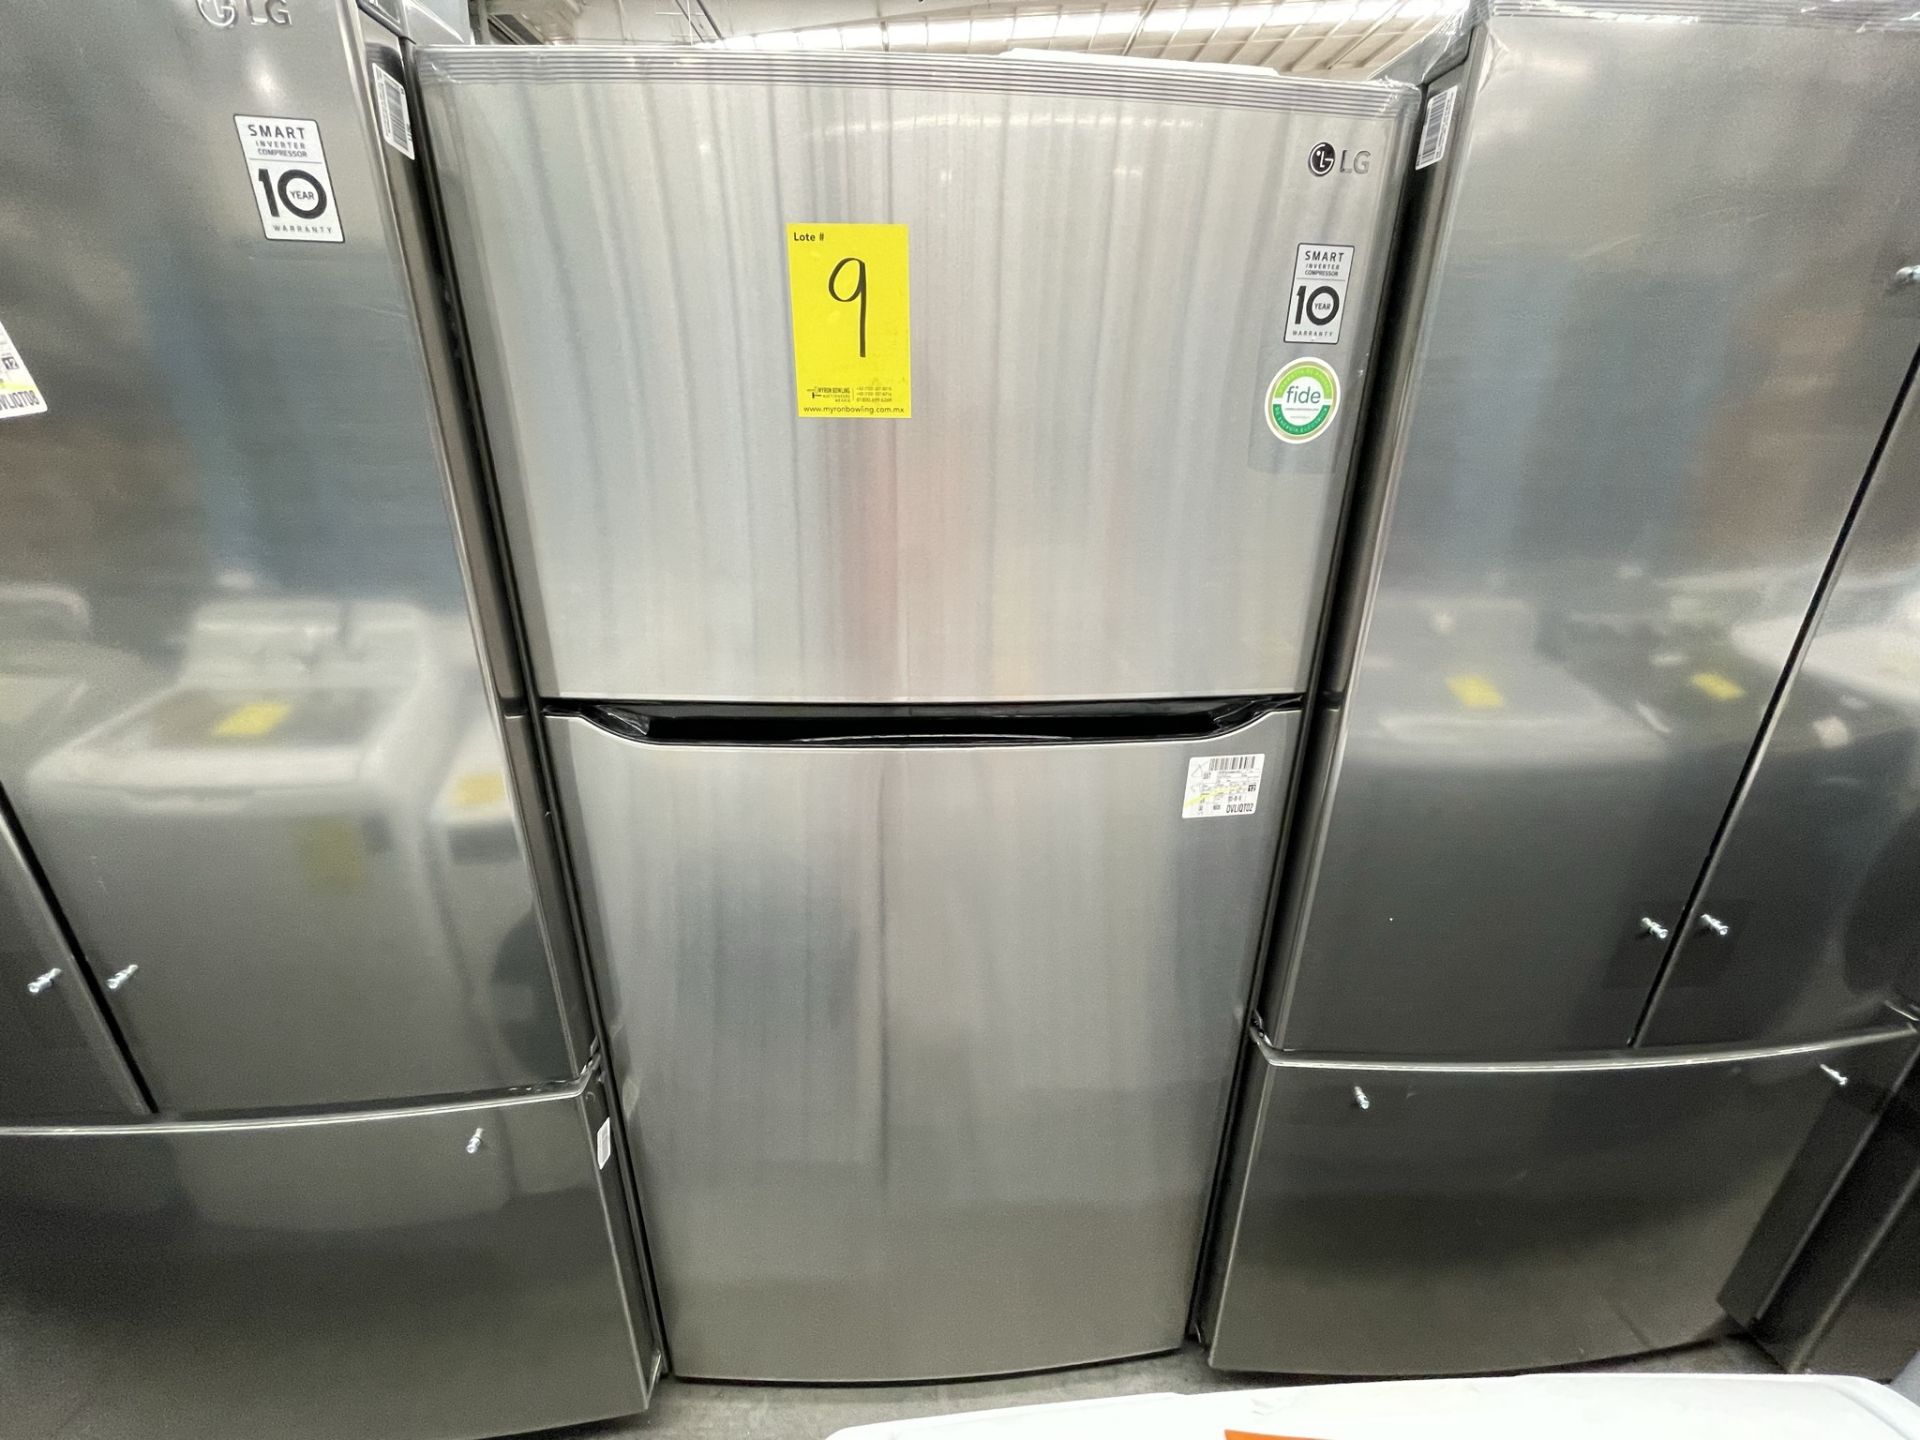 (EQUIPO NUEVO) 1 Refrigerador Marca LG, Modelo GT24BS, Serie V1C601, Color GRIS, LB-619781; (Nuevo, - Image 2 of 10